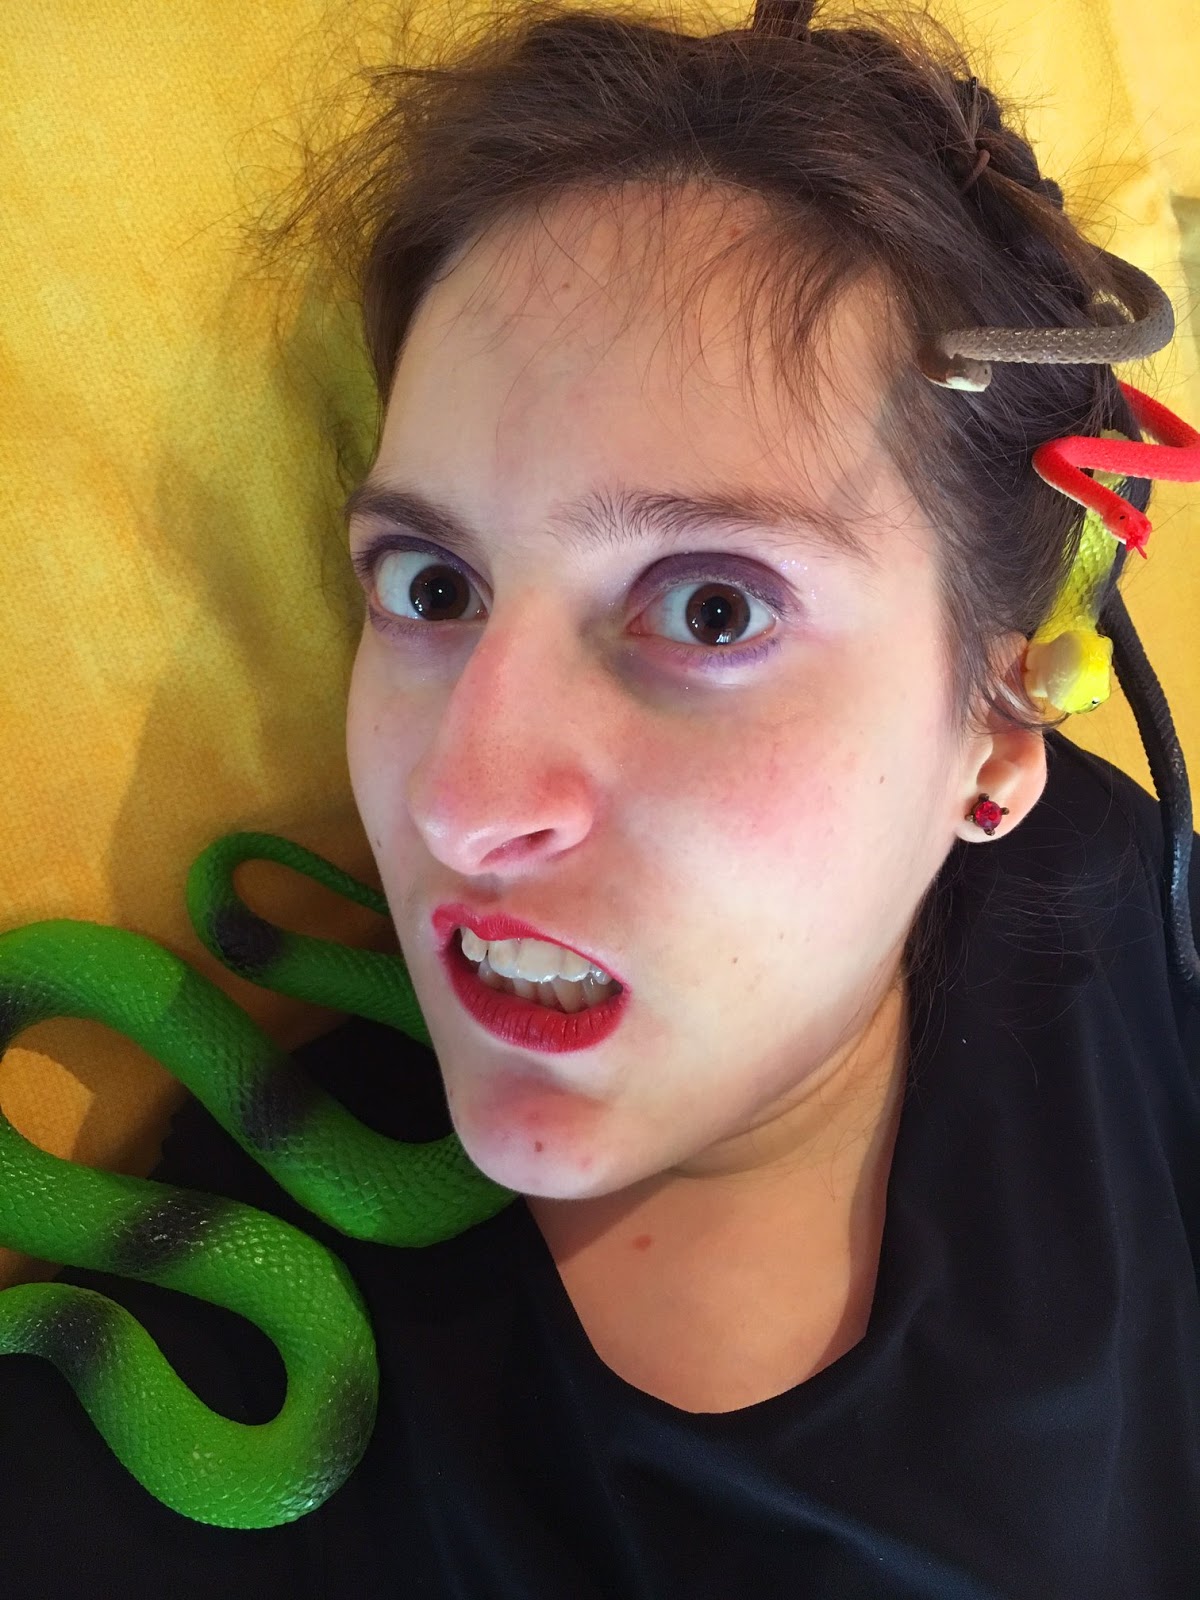 primo piano di Elena vestita da Medusa, con i serpenti finti sulla testa e un'espressione sbigottita e infastidita